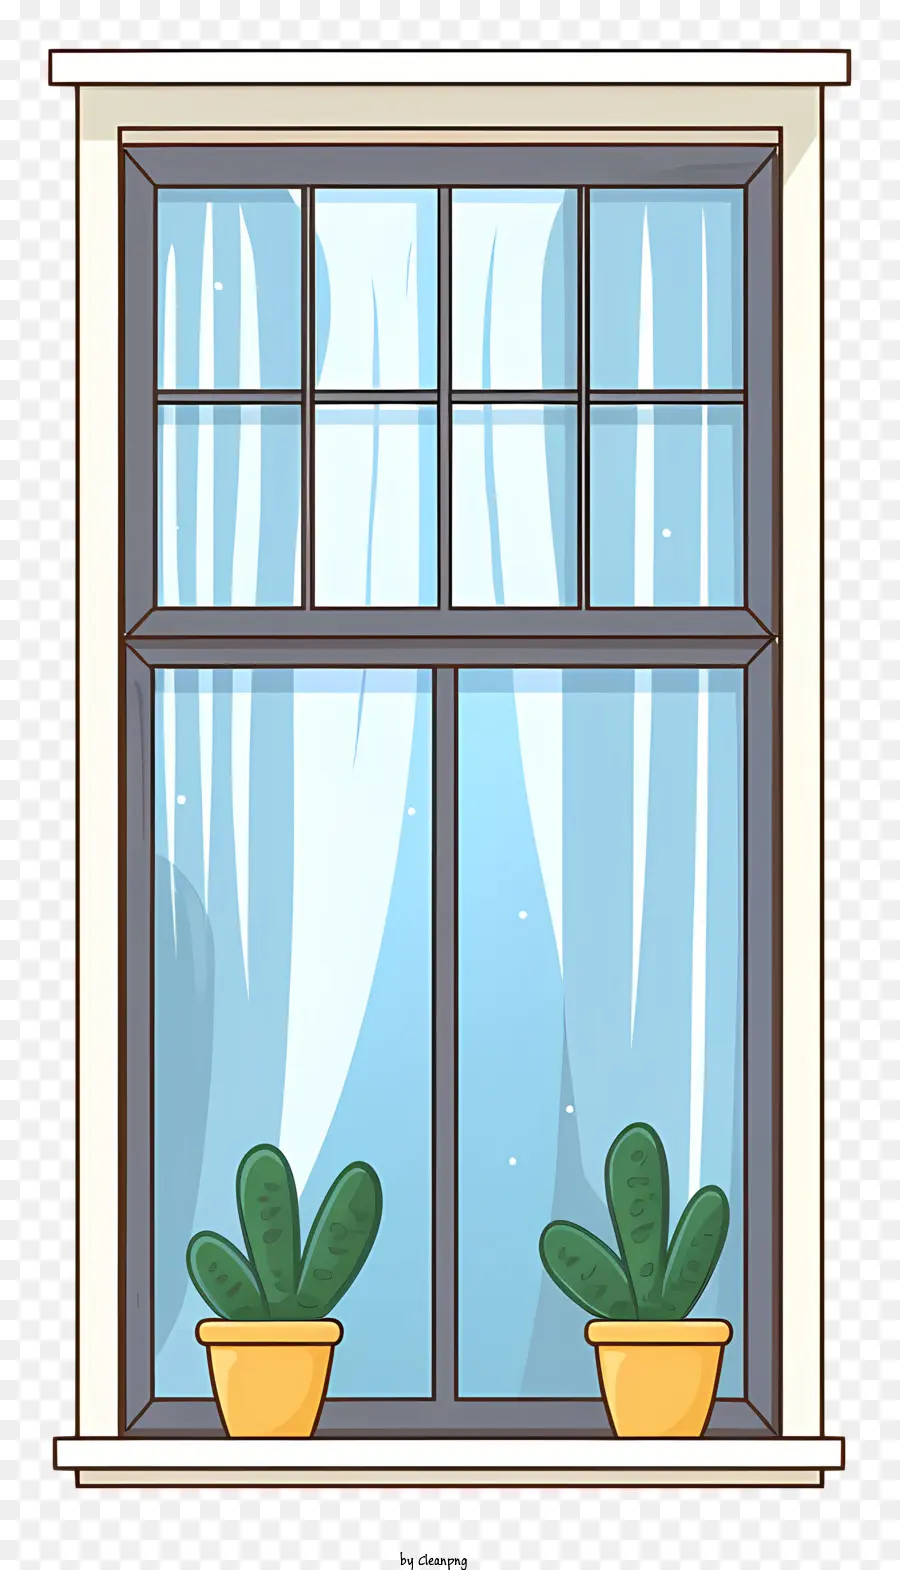 Holzrahmen - Öffnen Sie das Fenster mit Pflanzen auf Sill im ruhigen Raum